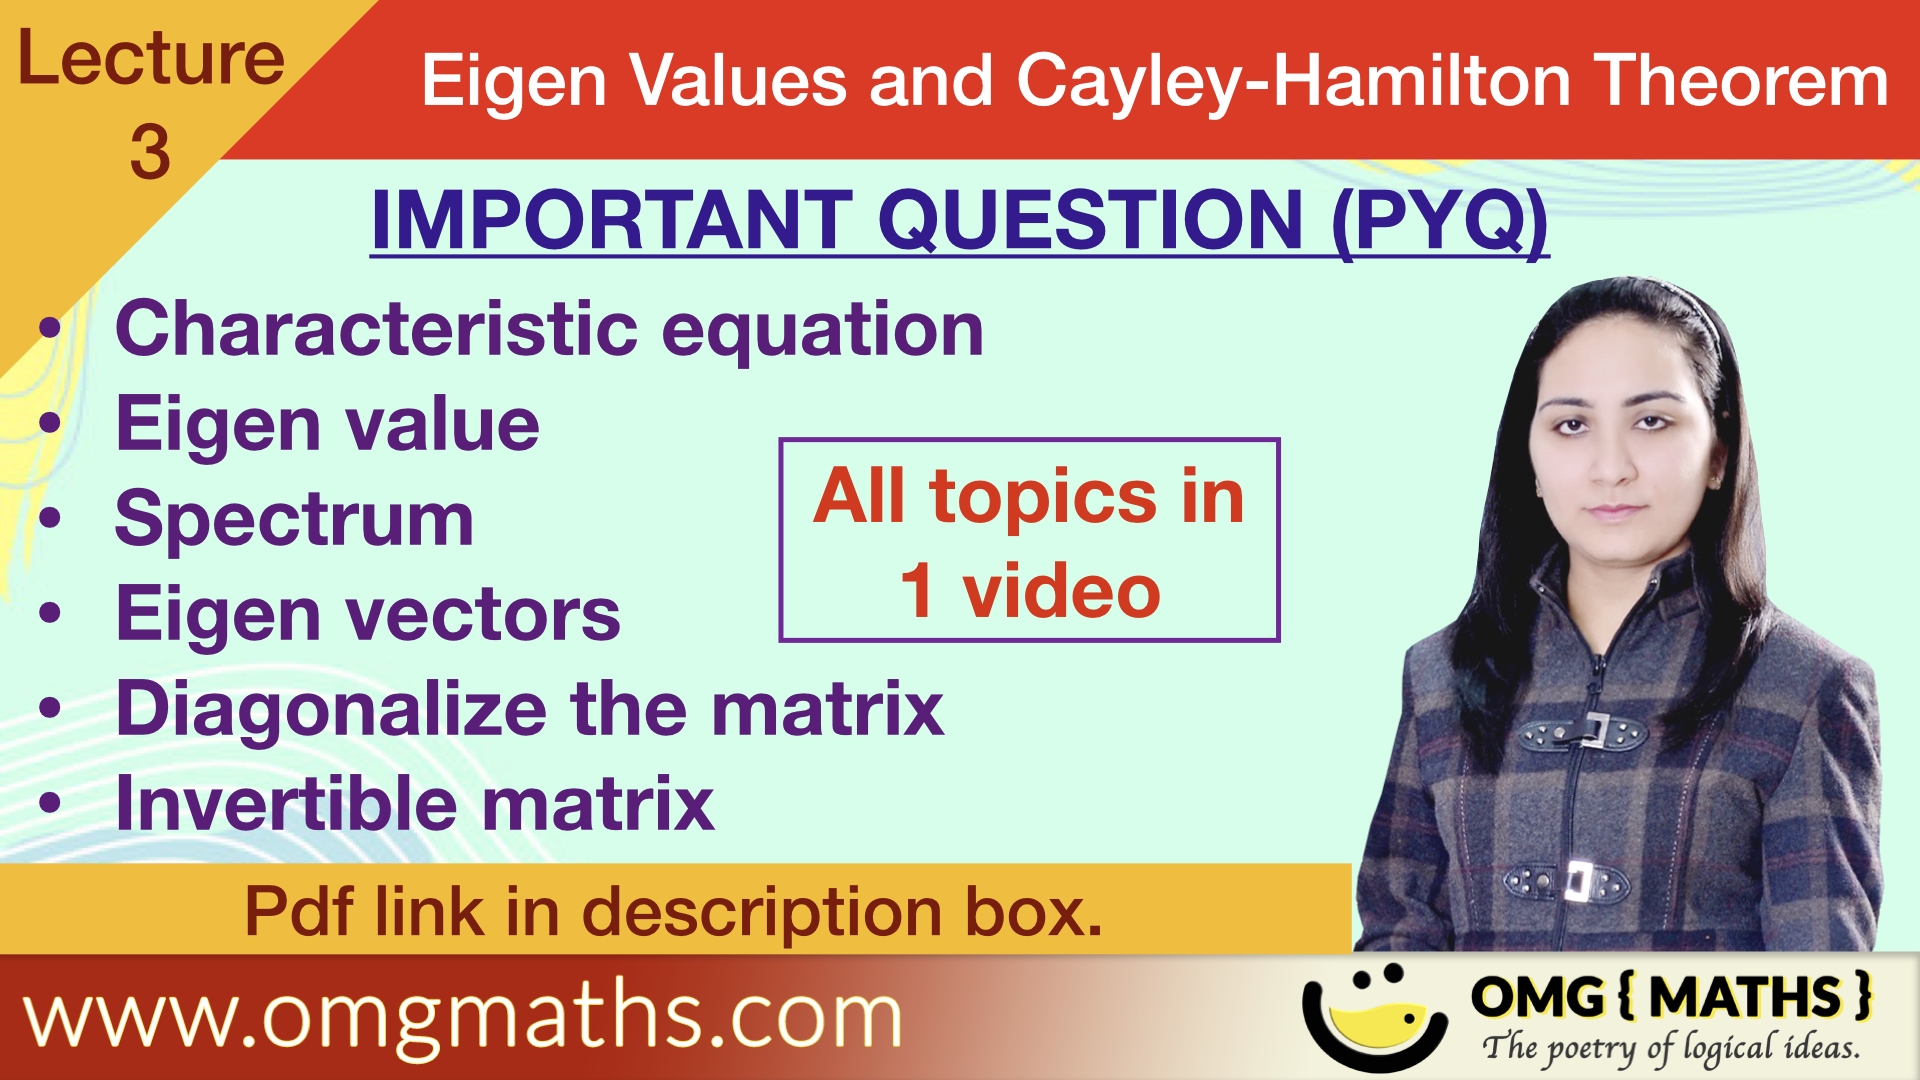 Eigen Values And Eigen Vectors | Diagonalization of Matrix | Invertible Matrix | Bsc